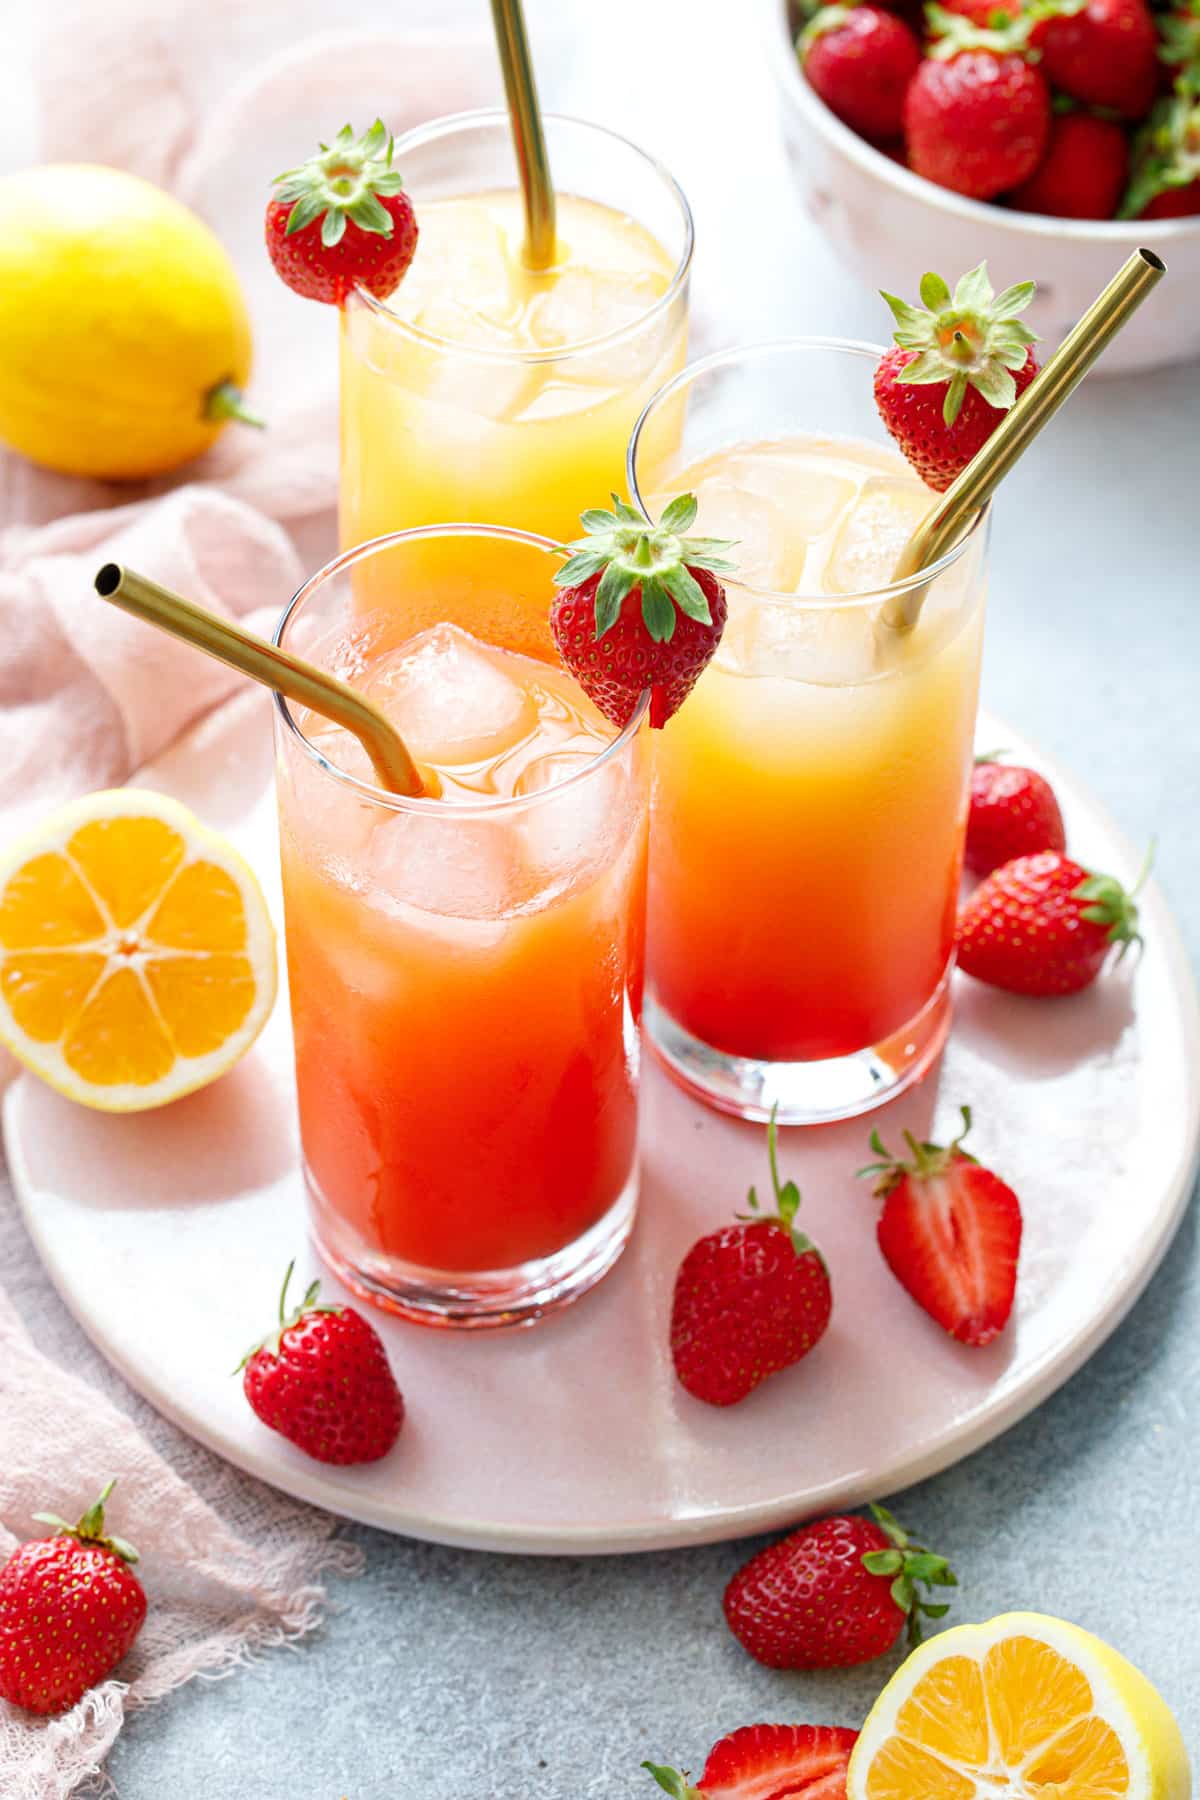 Три стакана Strawberry Passionfruit Lemonade с металлическими трубочками, а также разрезанные лимоны и клубника и ваза с ягодами на заднем плане.